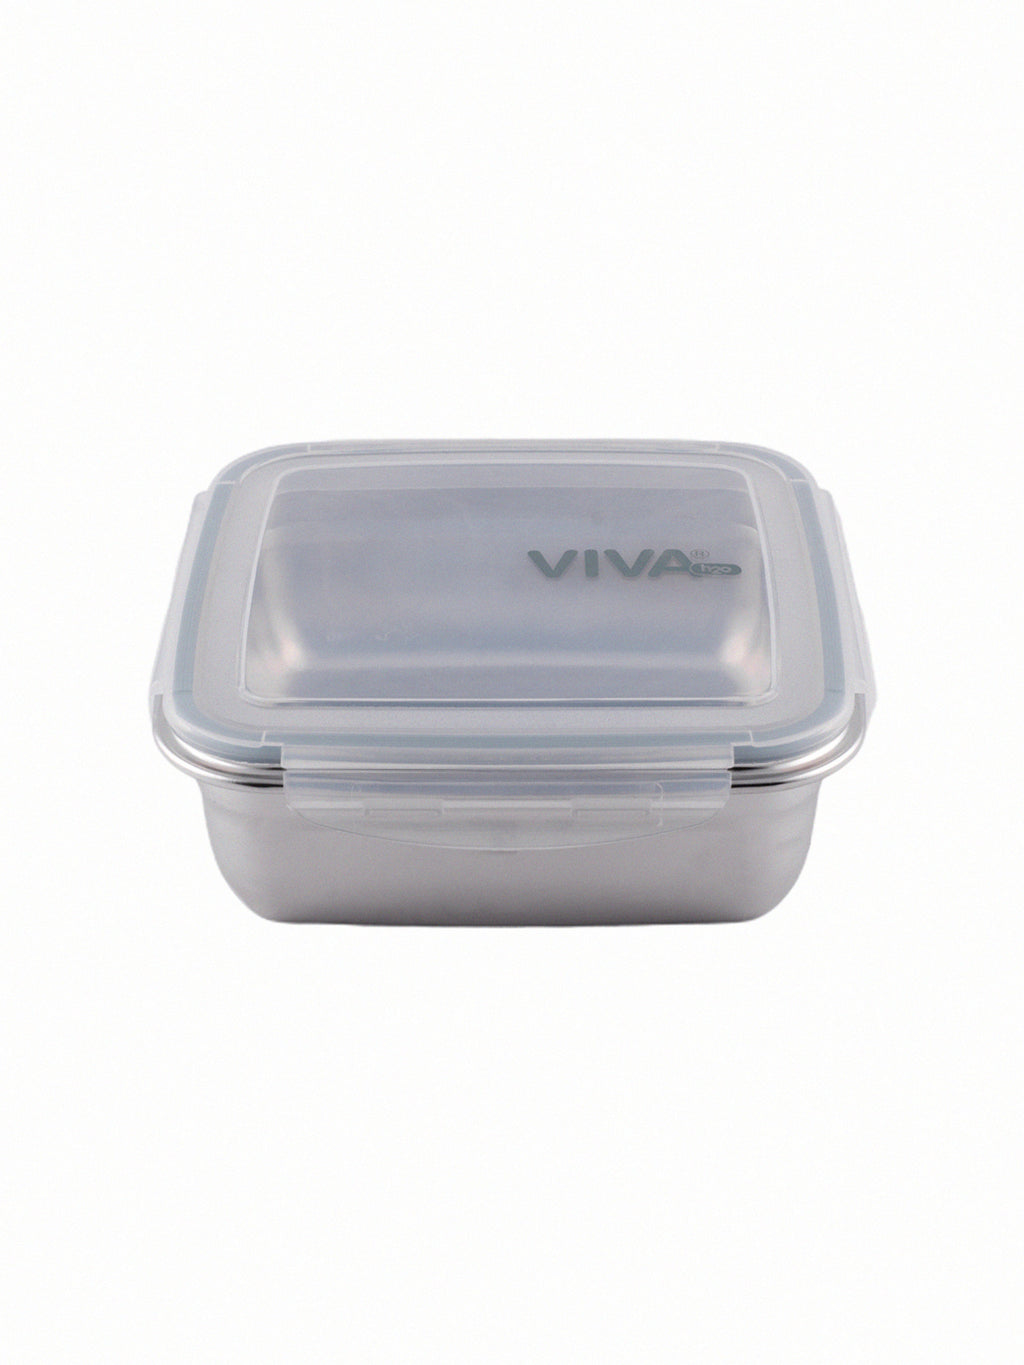 Viva Stainless Steel Lunch Box 2Pcs Set